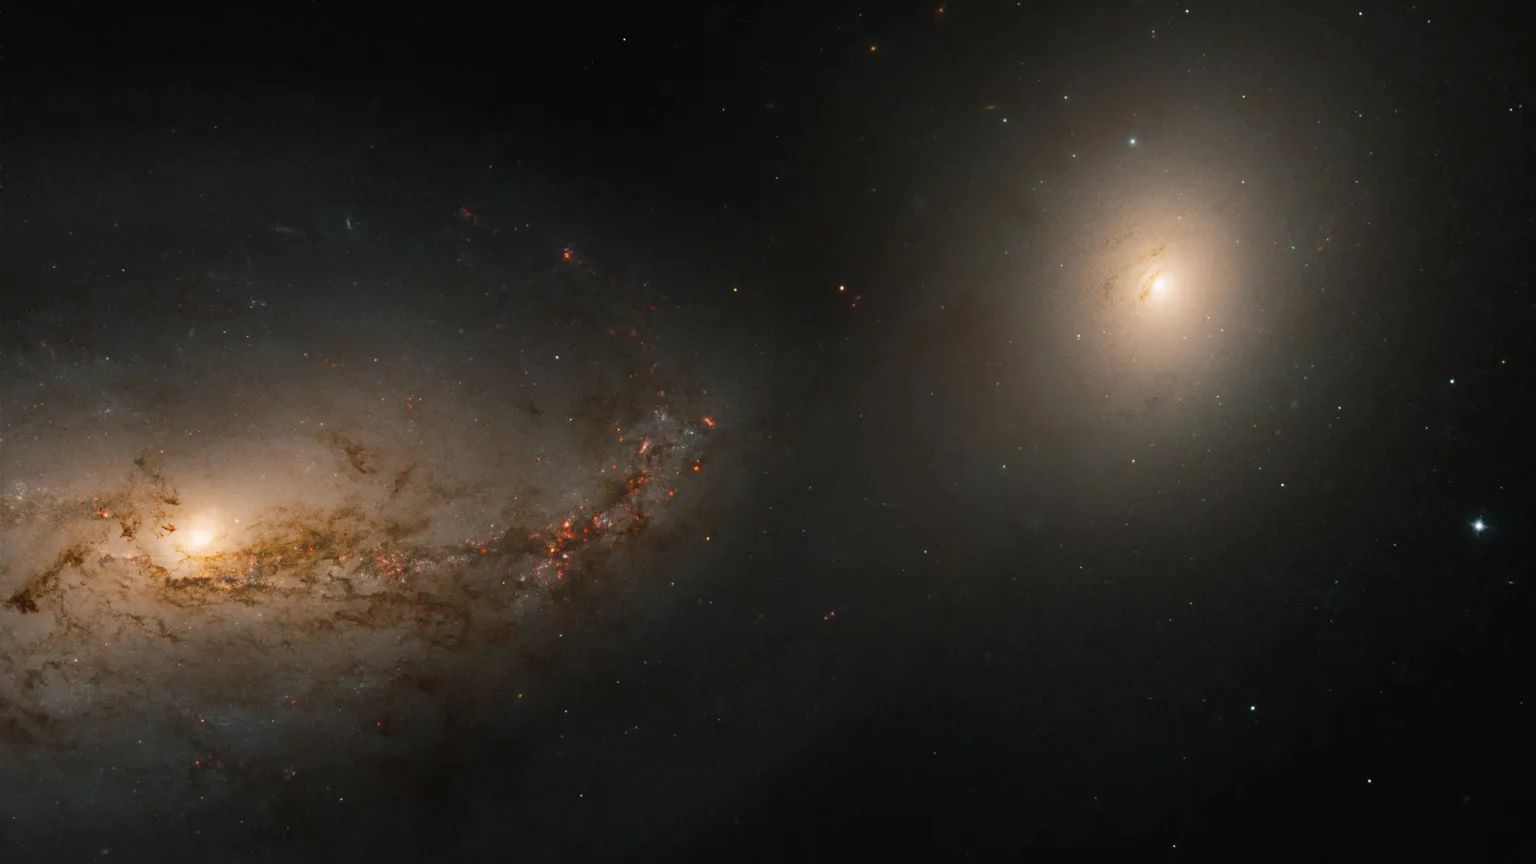 A grande galáxia espiral NGC 3227 está envolta em uma dança gravitacional turbulenta com sua companheira, a galáxia elíptica NGC 3226. A dupla – conhecida como Arp 94 – está relativamente próxima, entre 50 e 60 milhões de anos-luz de distância, na direção da Constelação de Leão. Uma observação mais detalhada da área entre as duas galáxias revela tênues correntes de gás e poeira que ligam o par em sua dança gravitacional